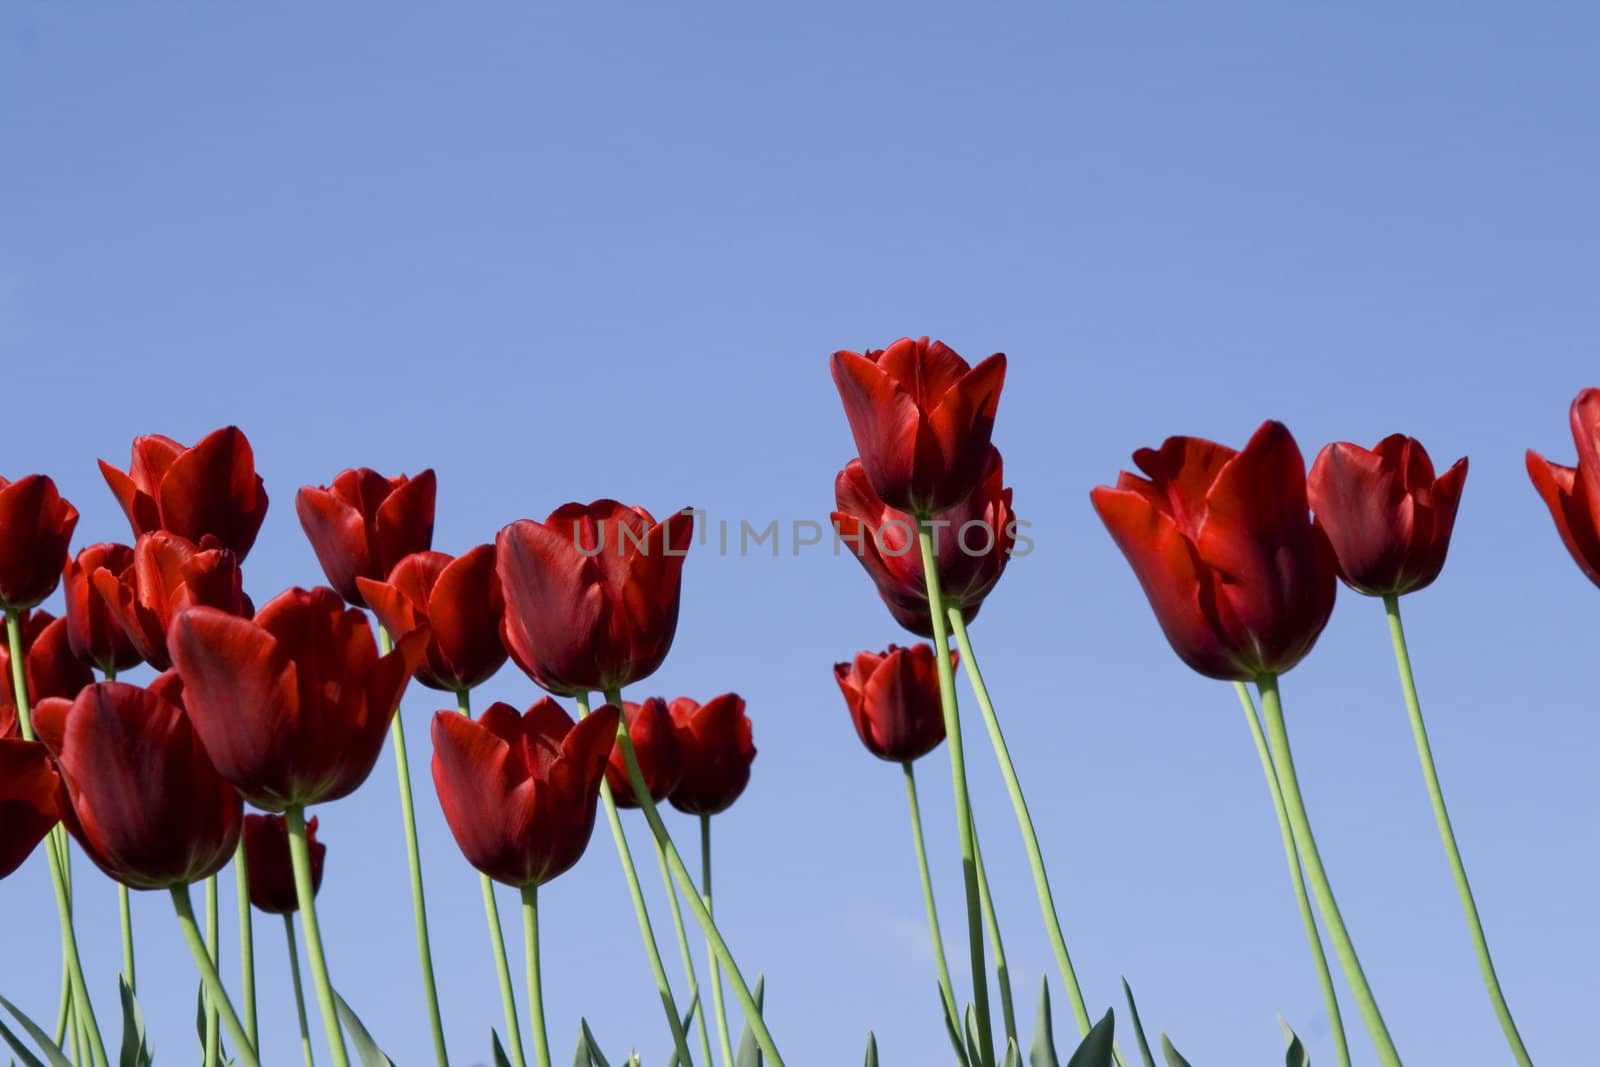 red tulips field on a blue sky by daboost